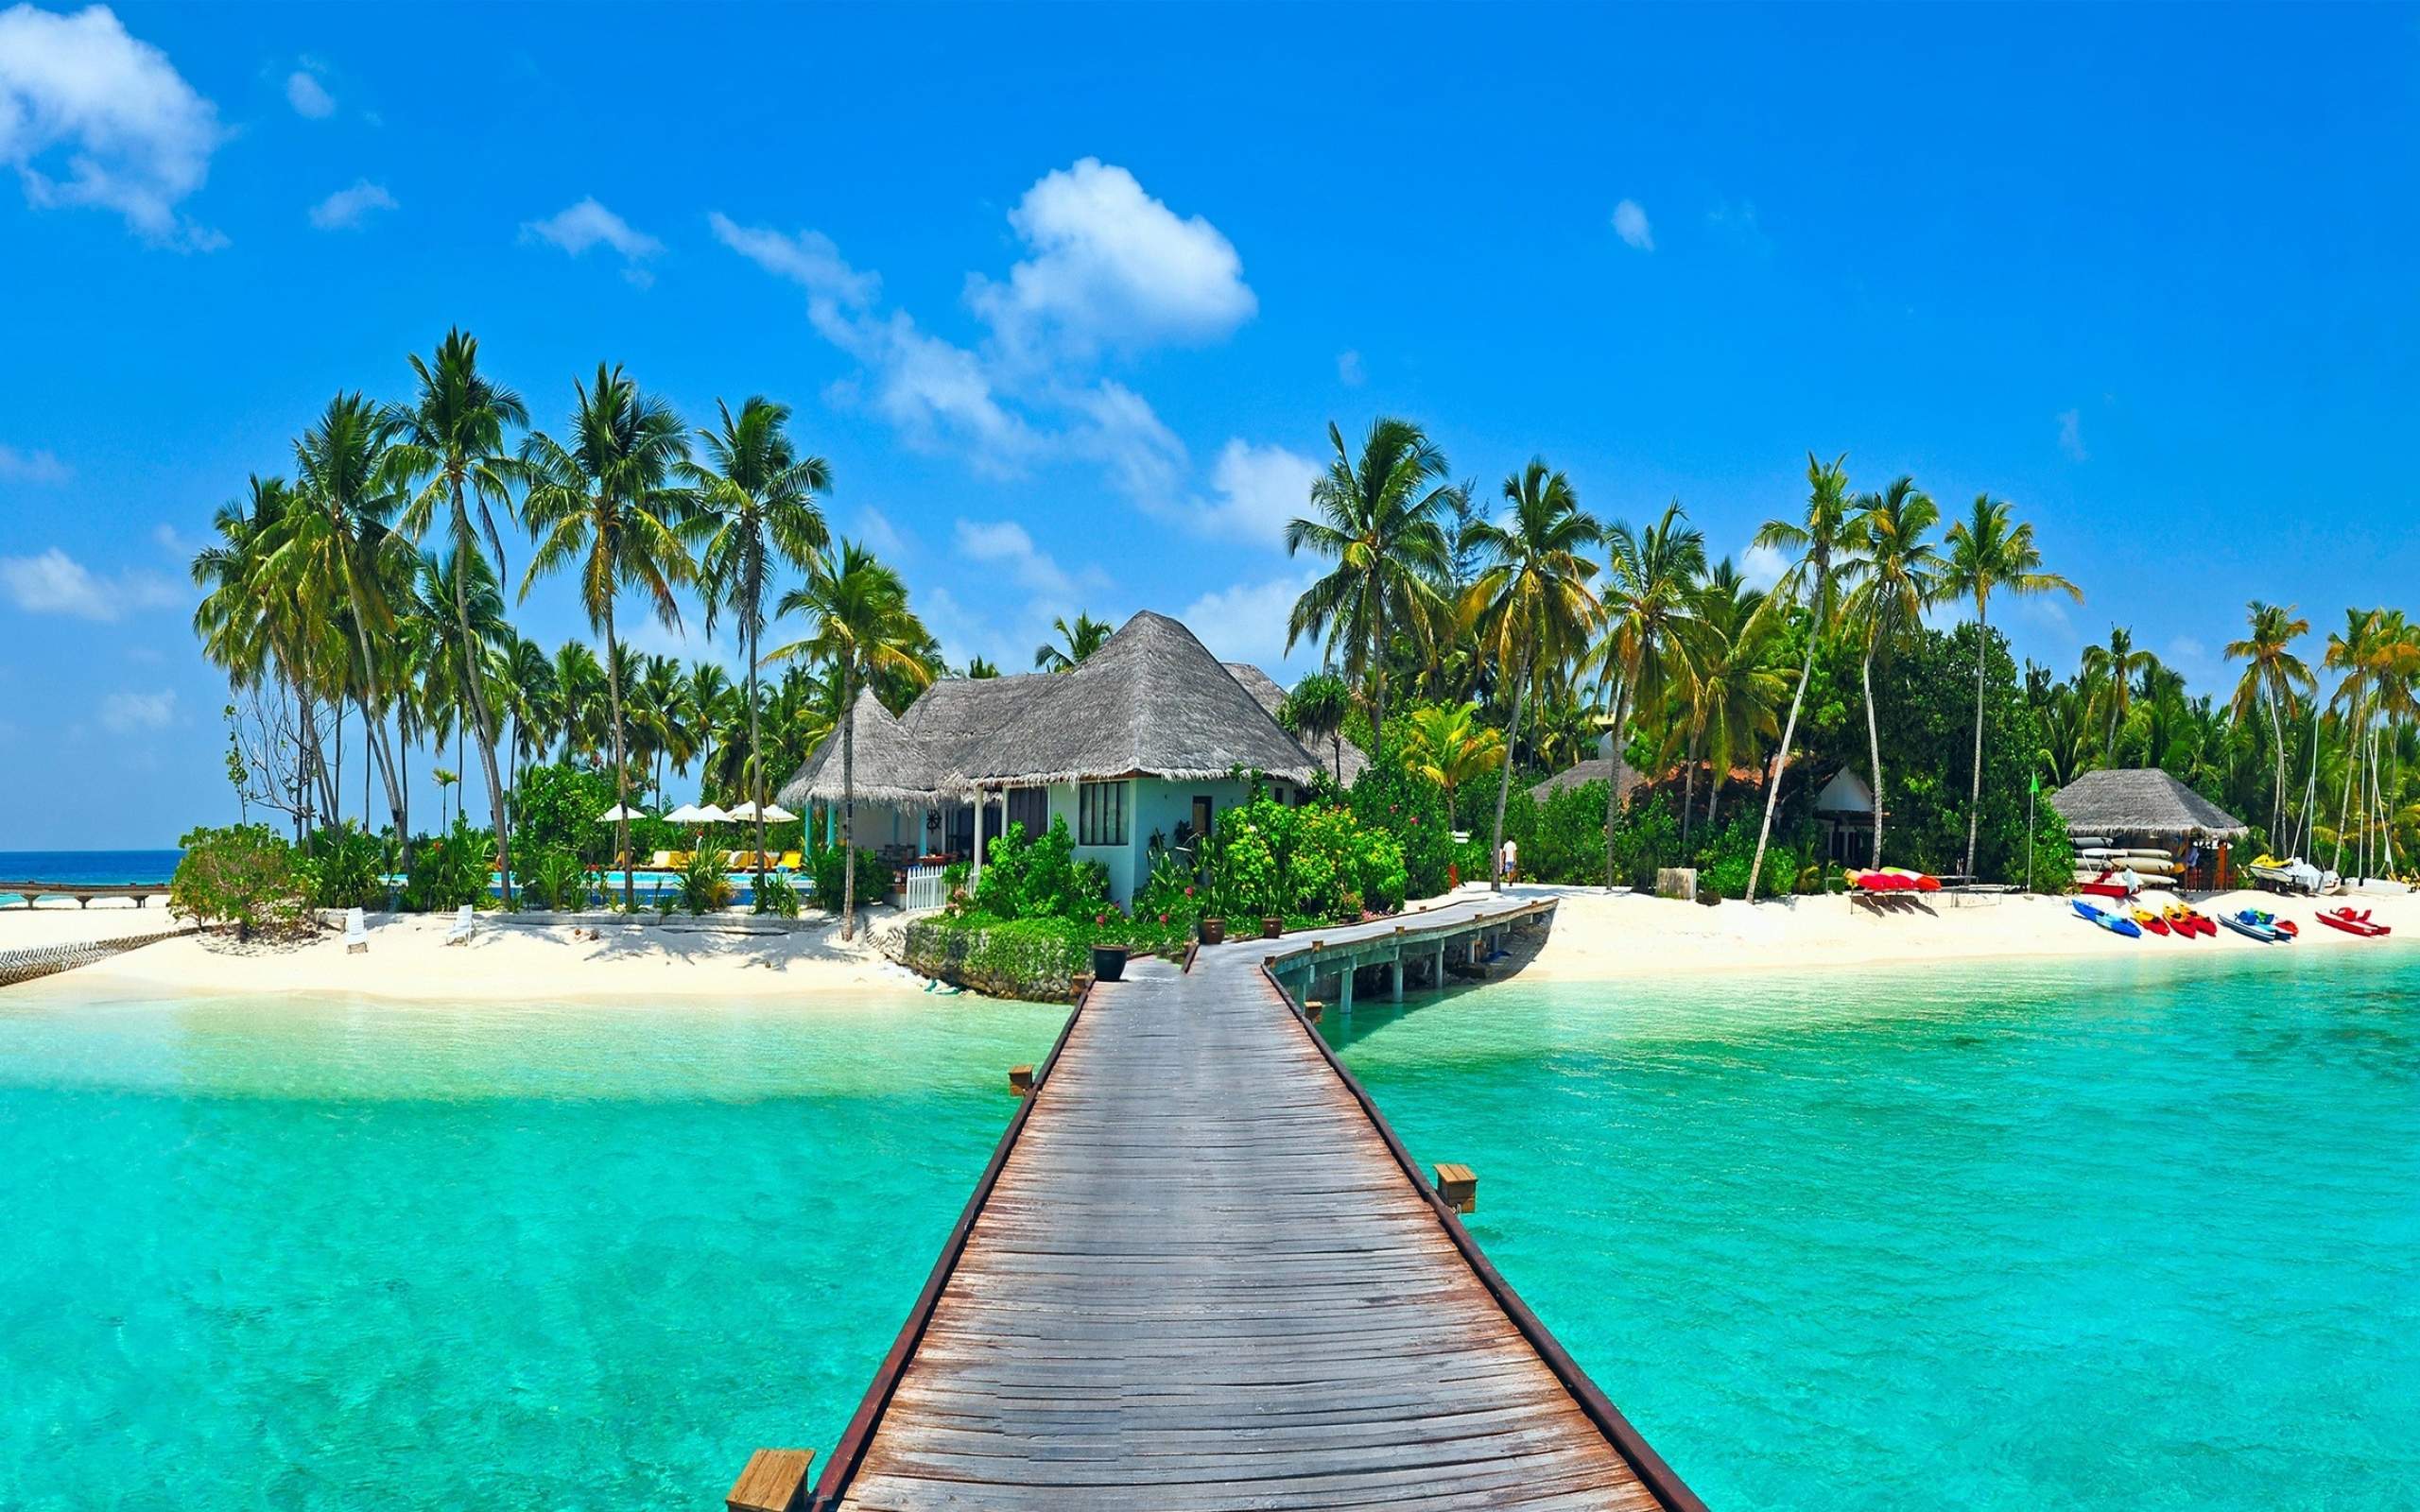 Download Beautiful Island Resort Wallpaper for desktop, mobile